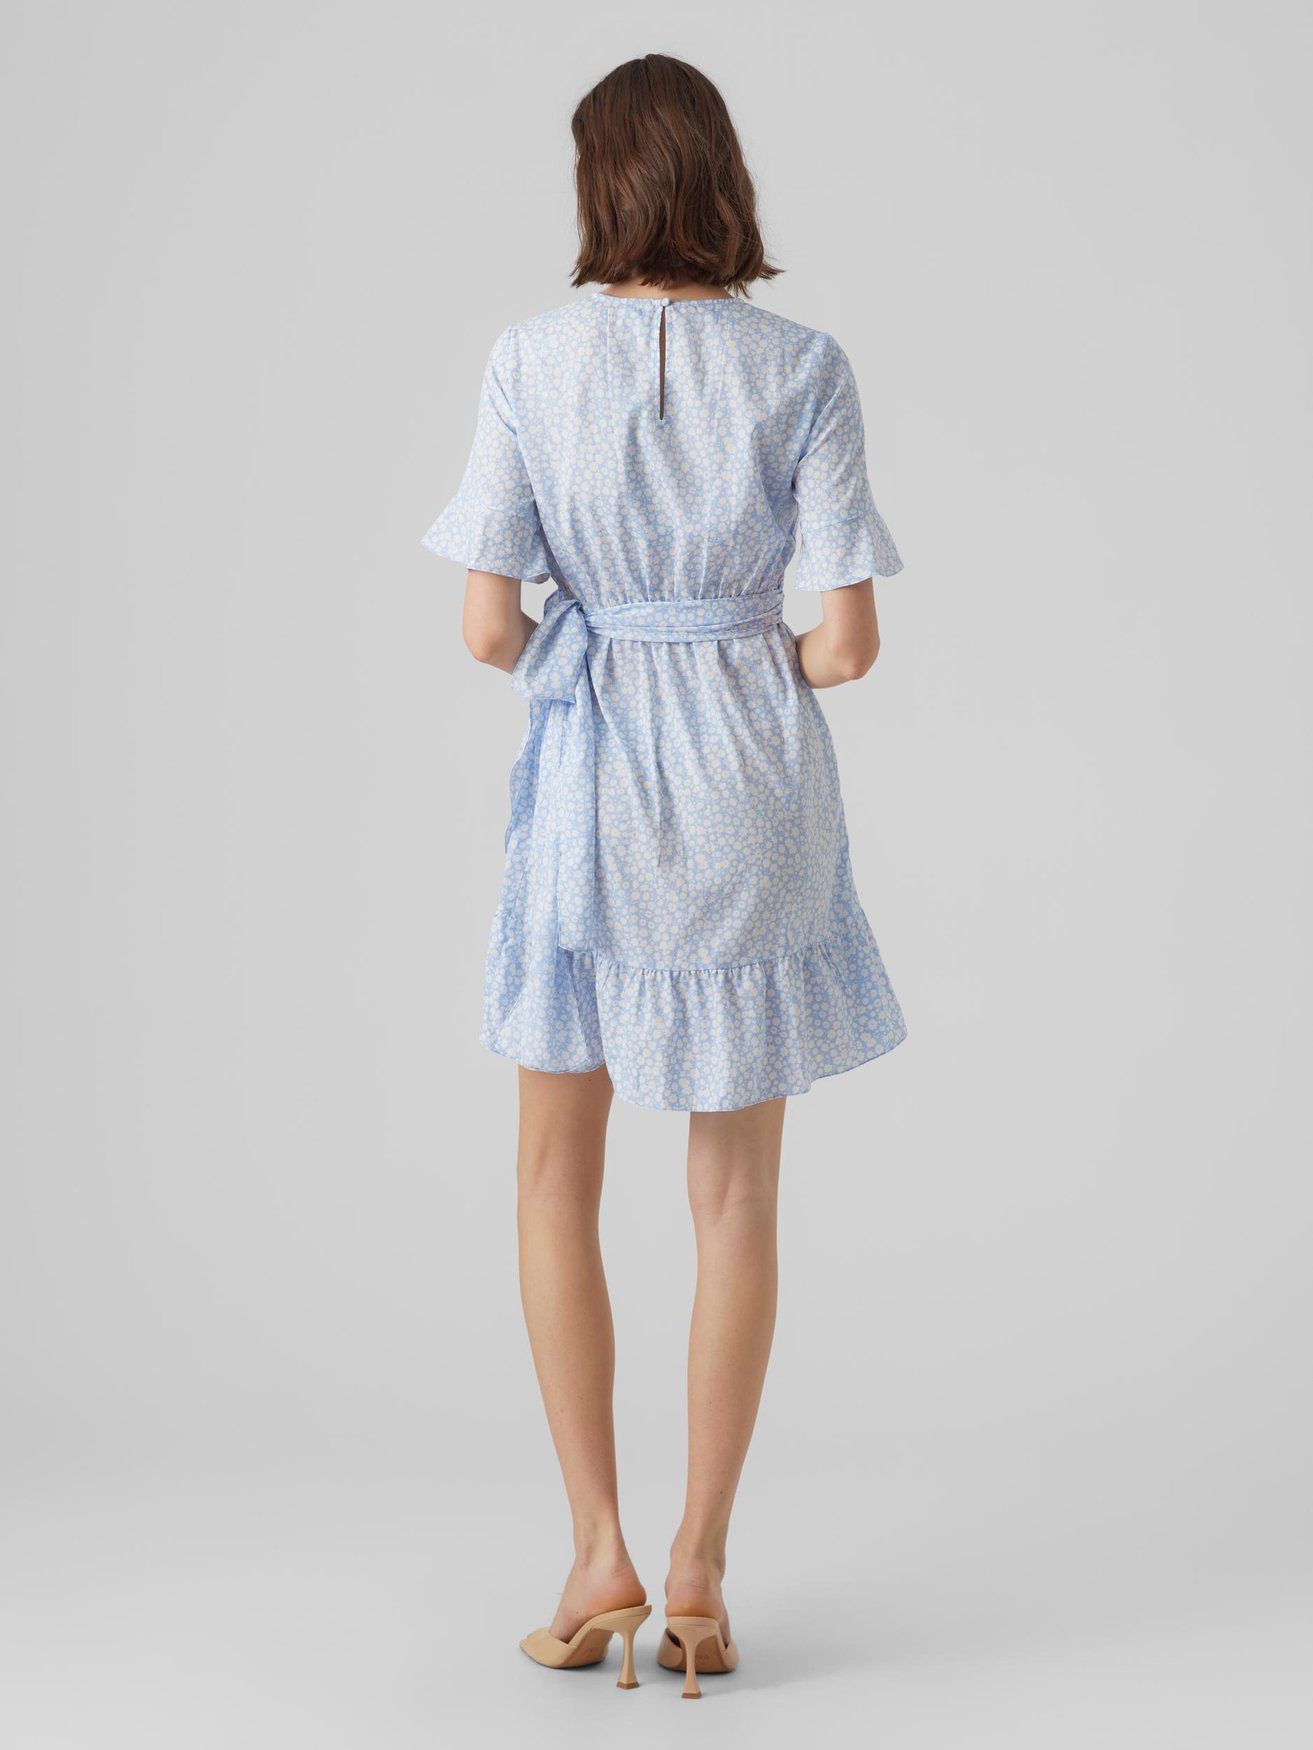 VMHENNA Moda Kurzes Kleid 5775 Vero Blau Mini (kurz) Wickel in Shirtkleid